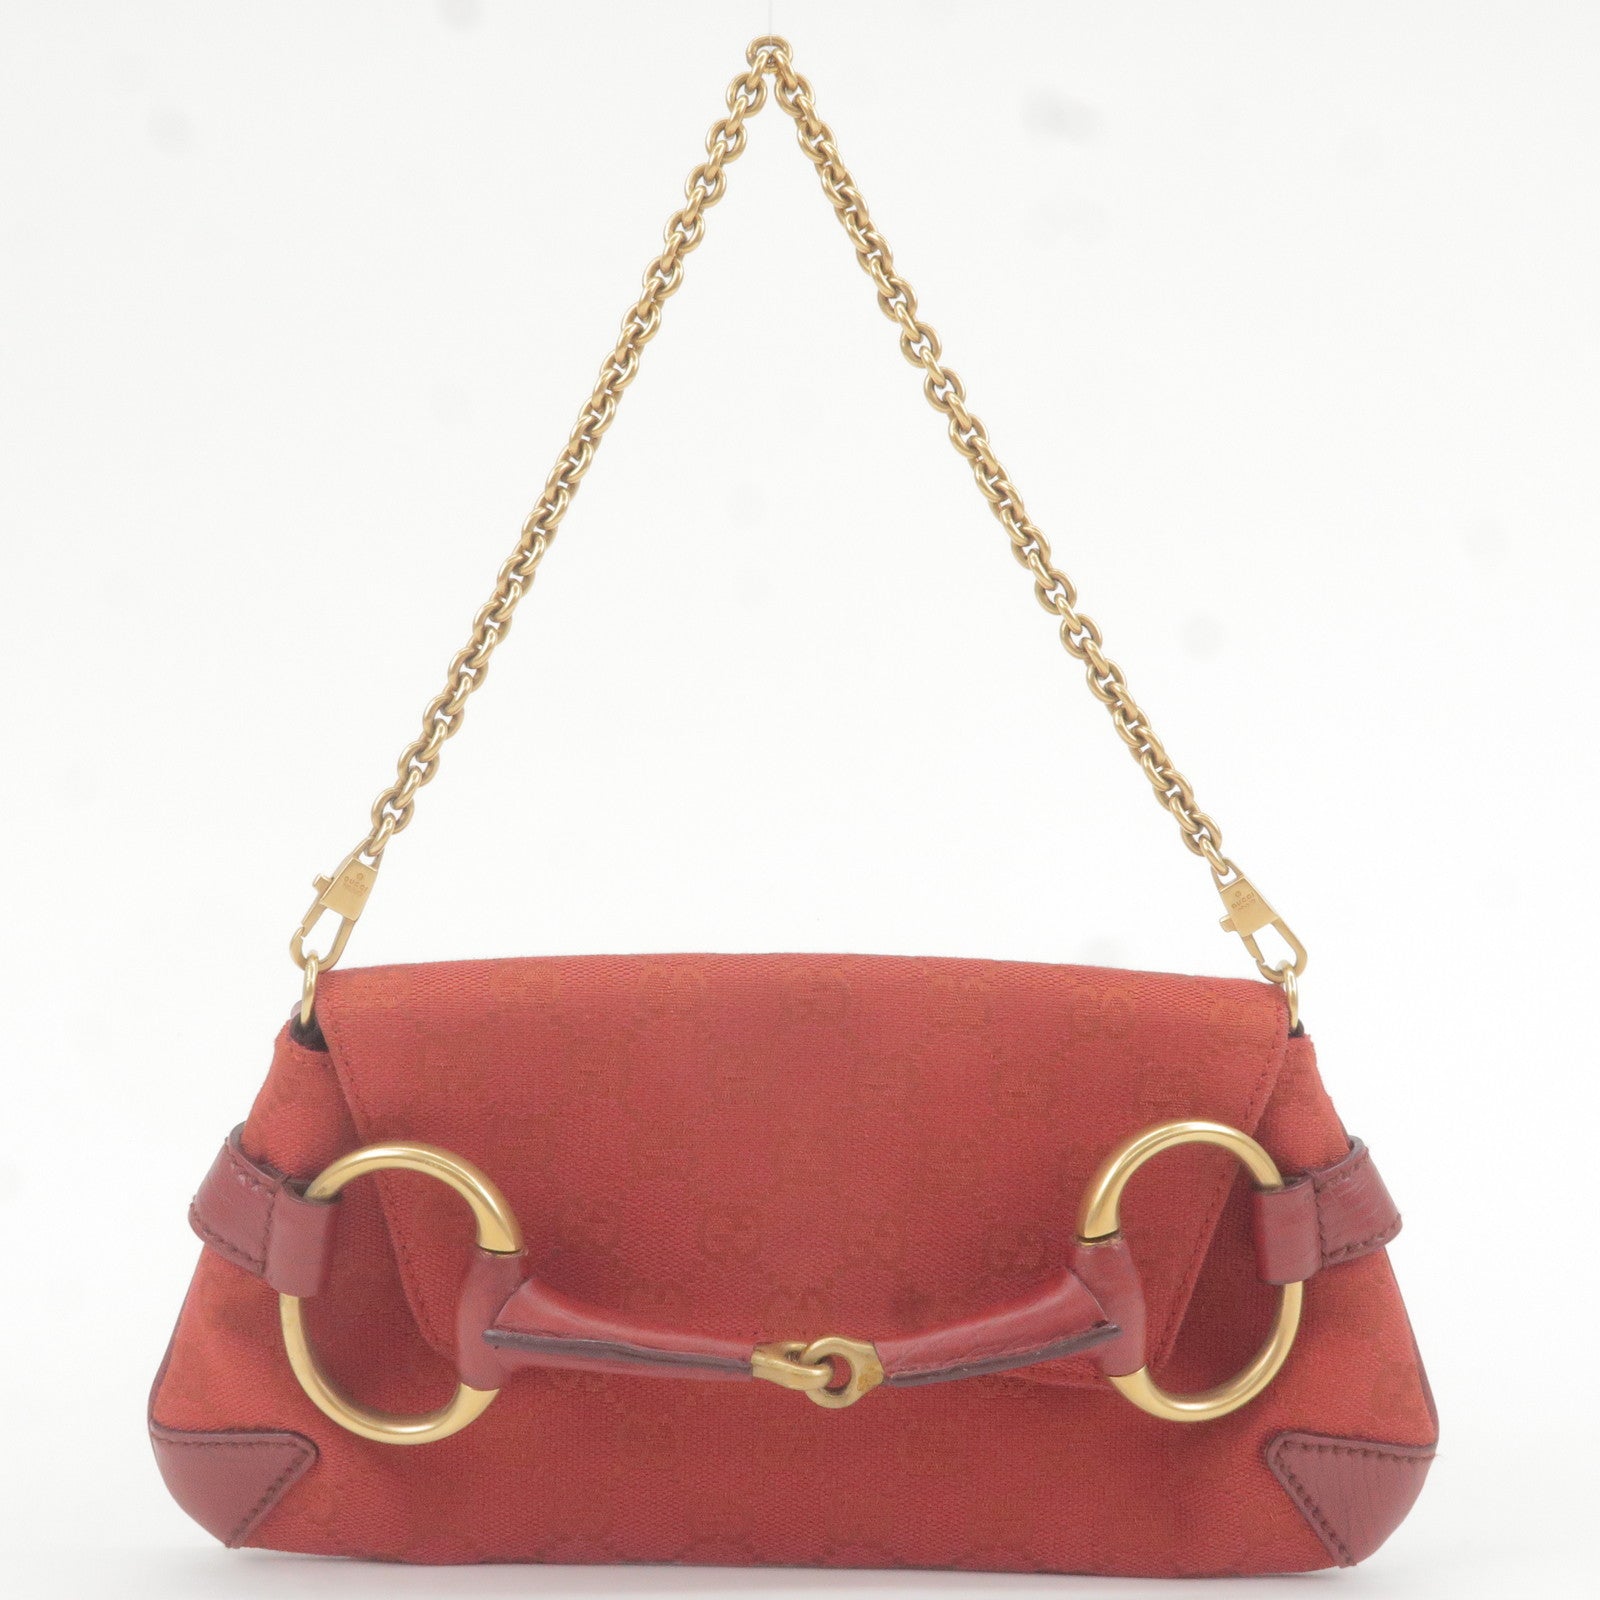 Sellier - Leather horsebit bag